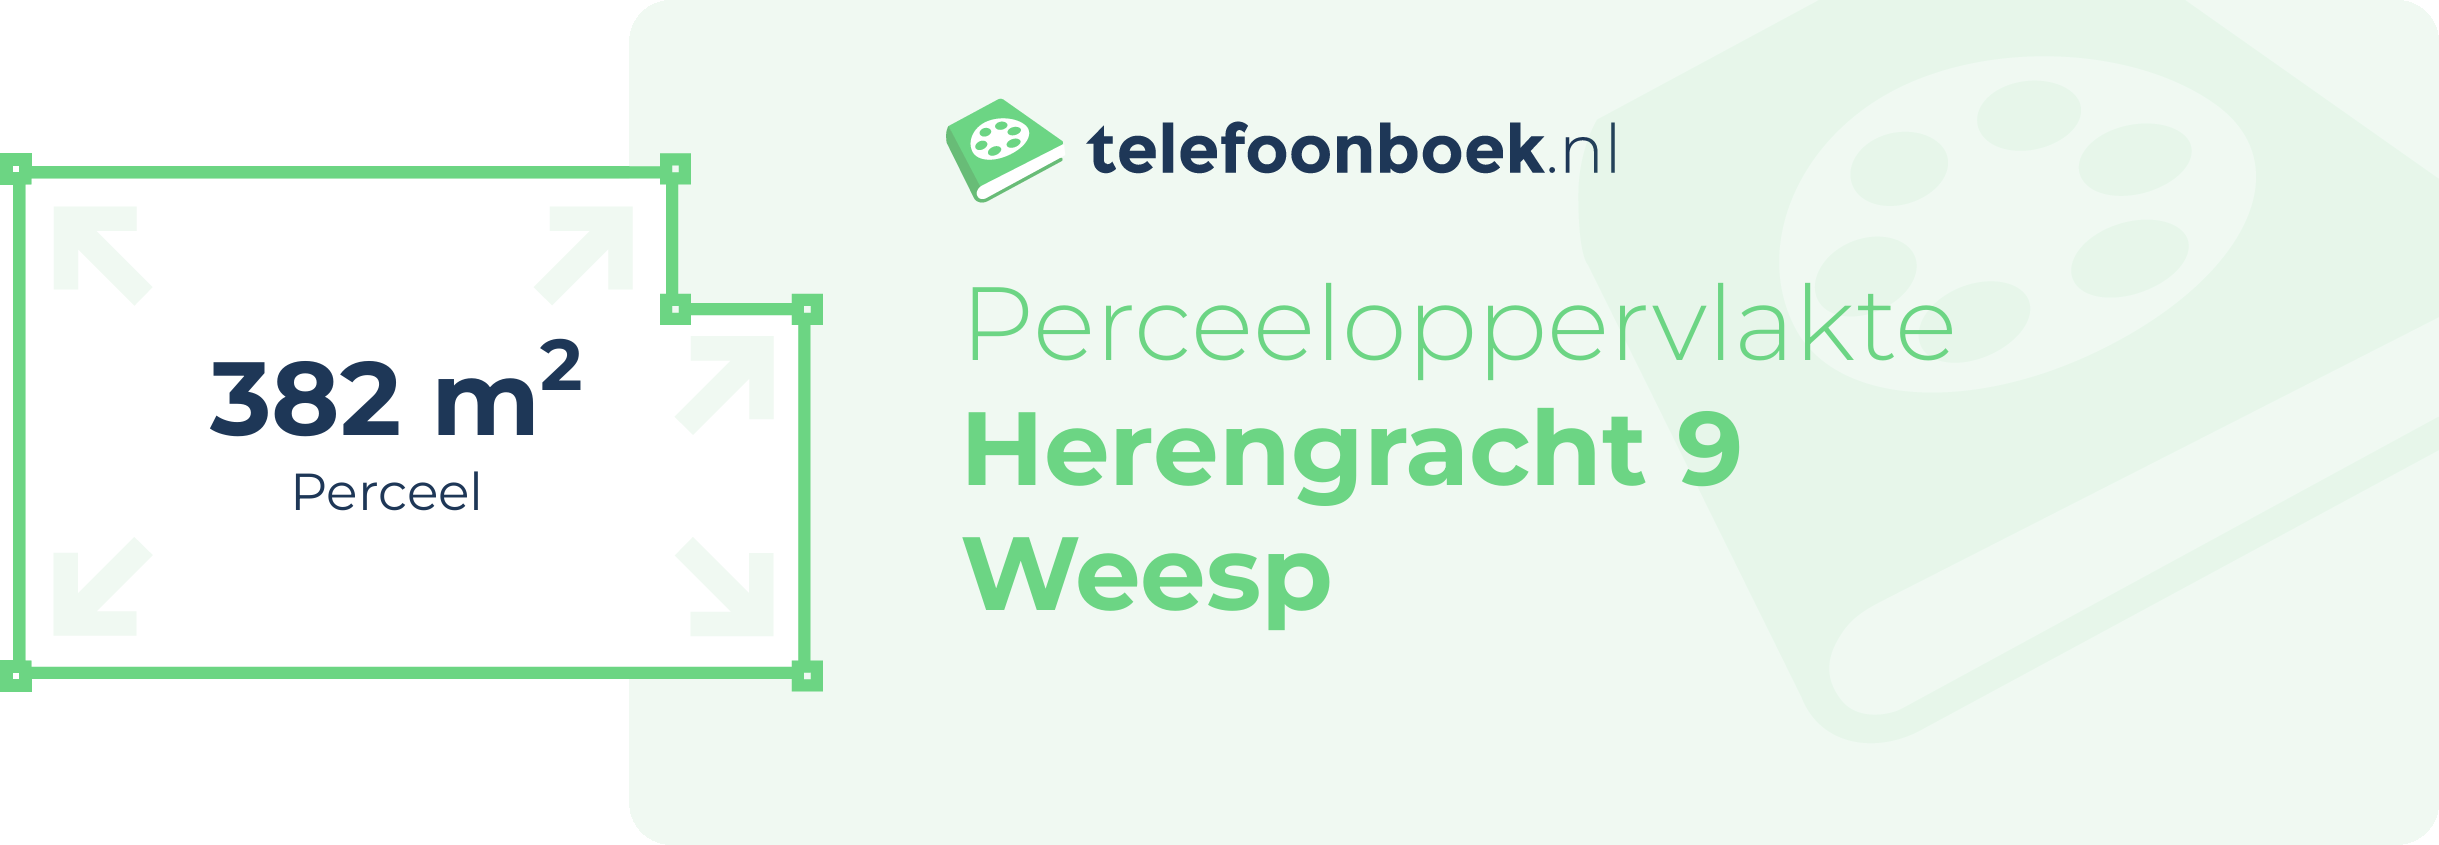 Perceeloppervlakte Herengracht 9 Weesp